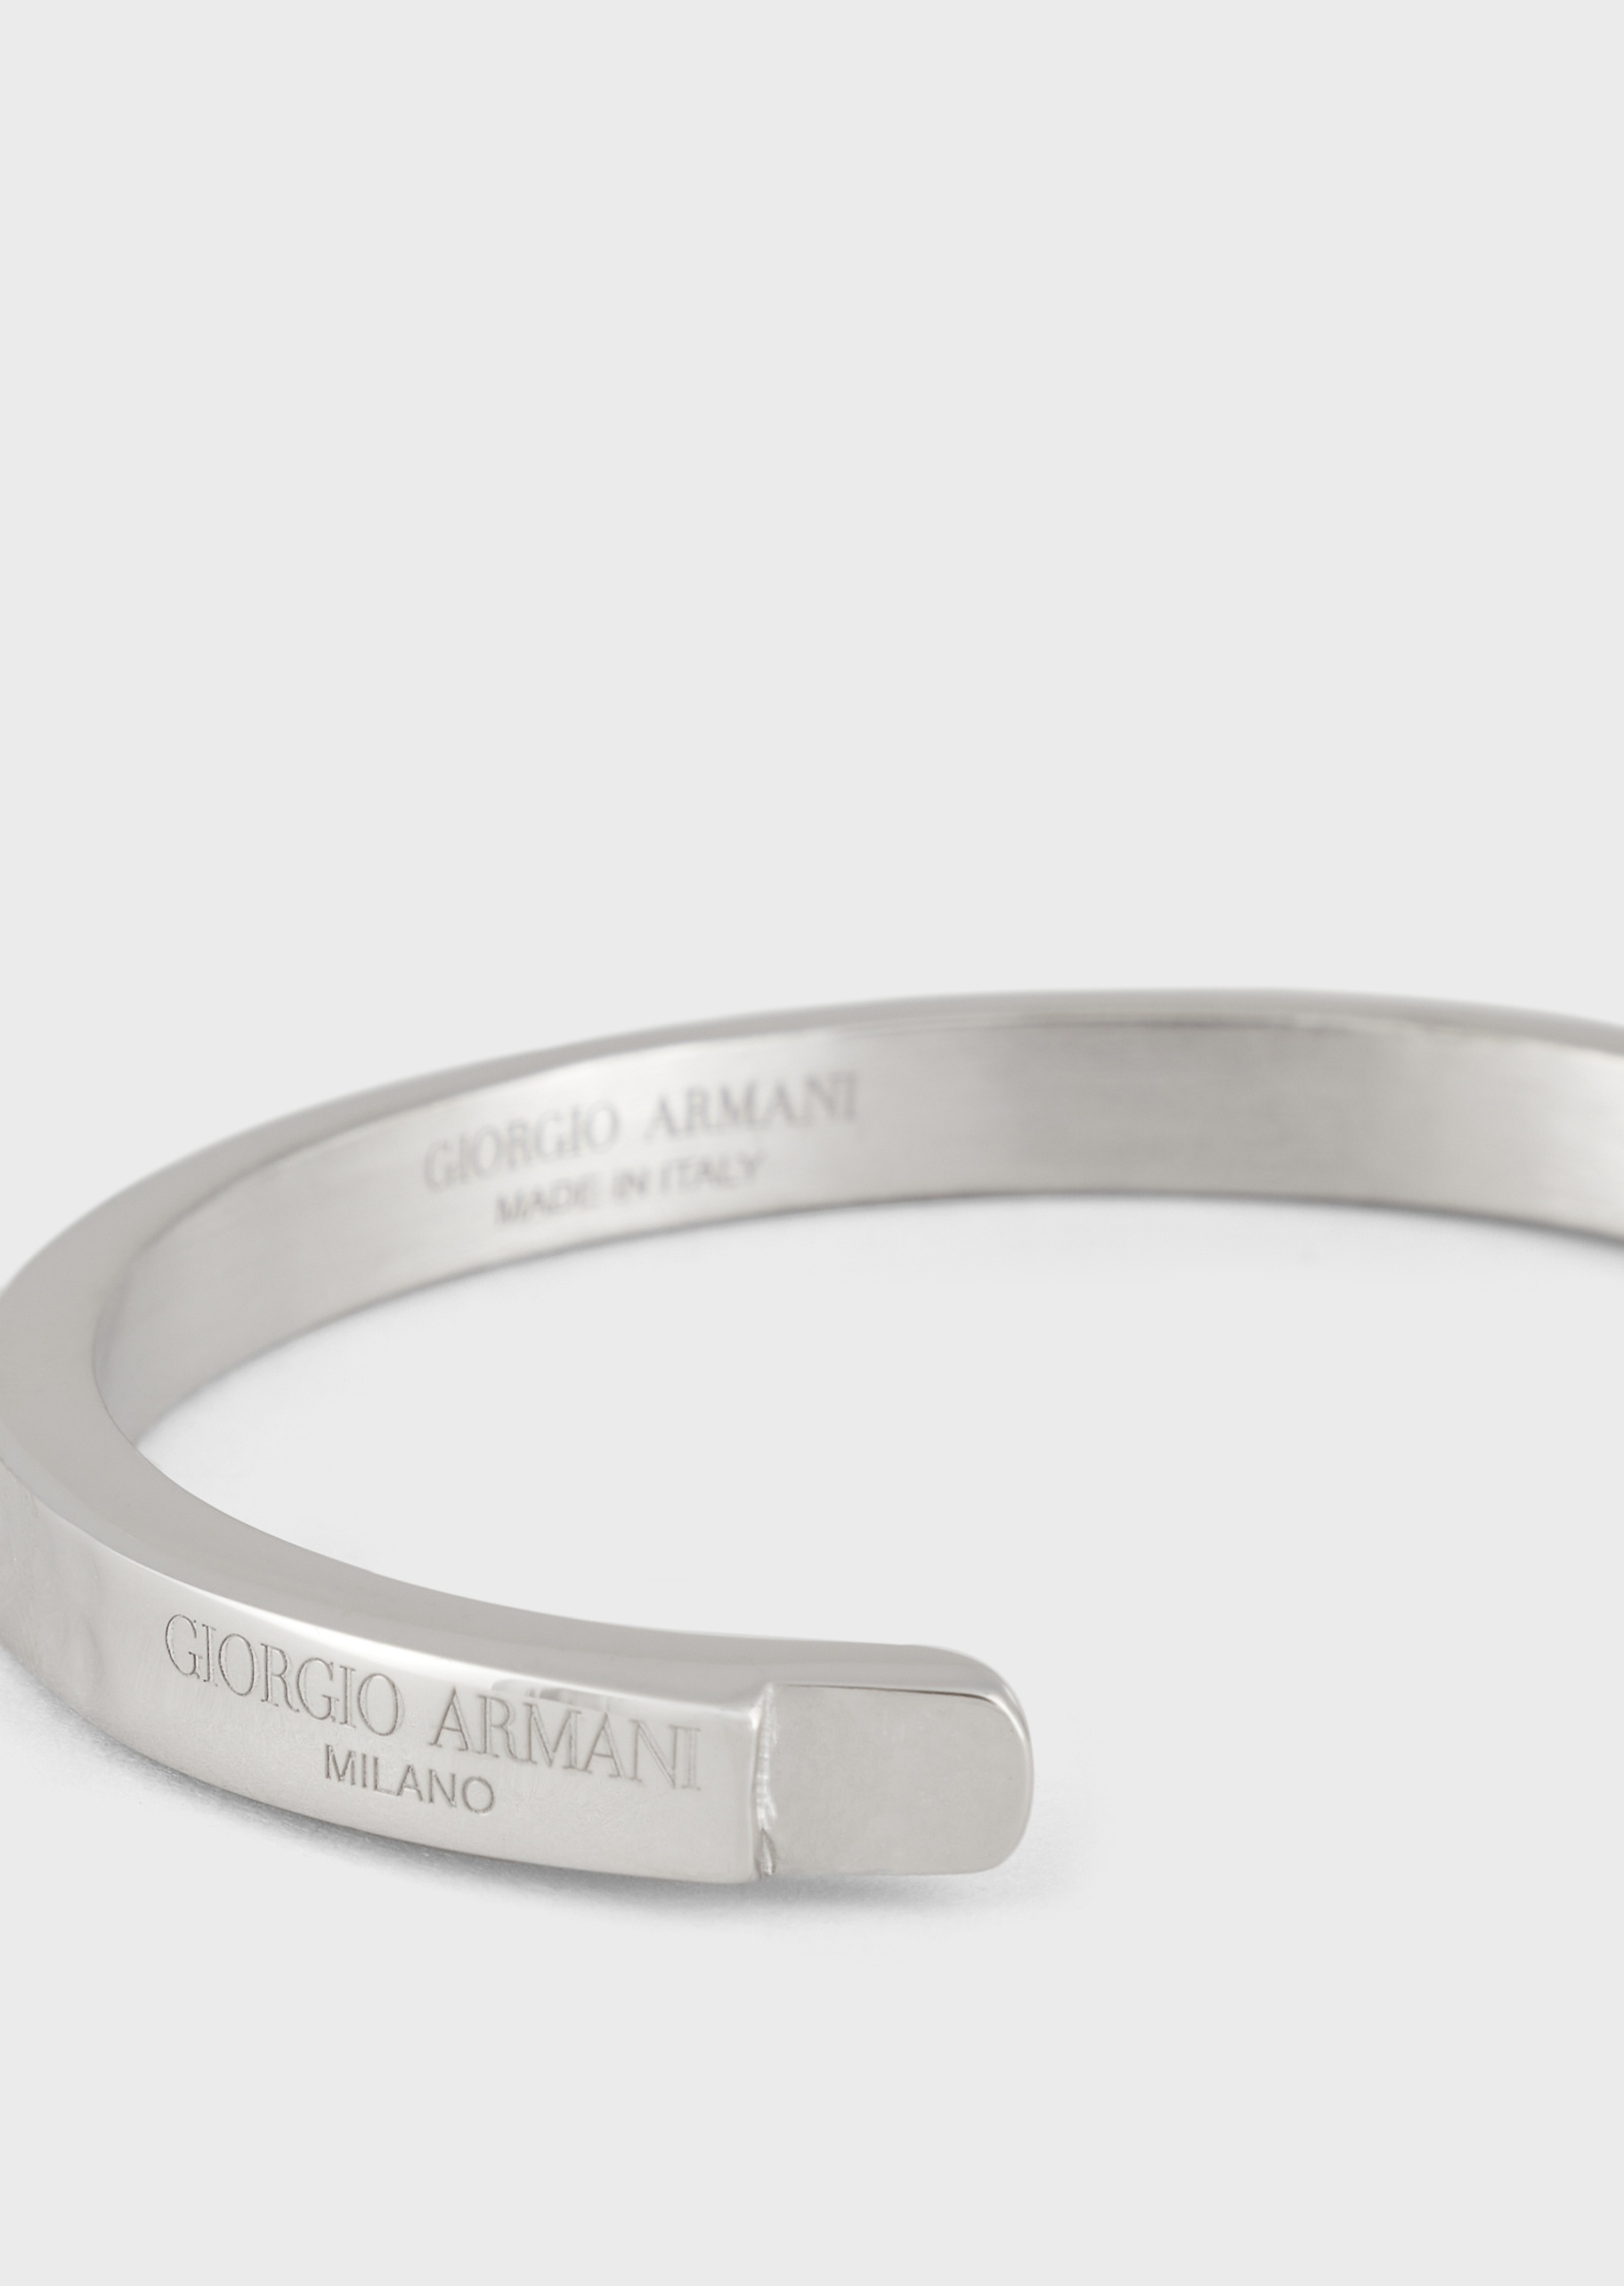 Giorgio Armani 镌刻锤纹银质戒指